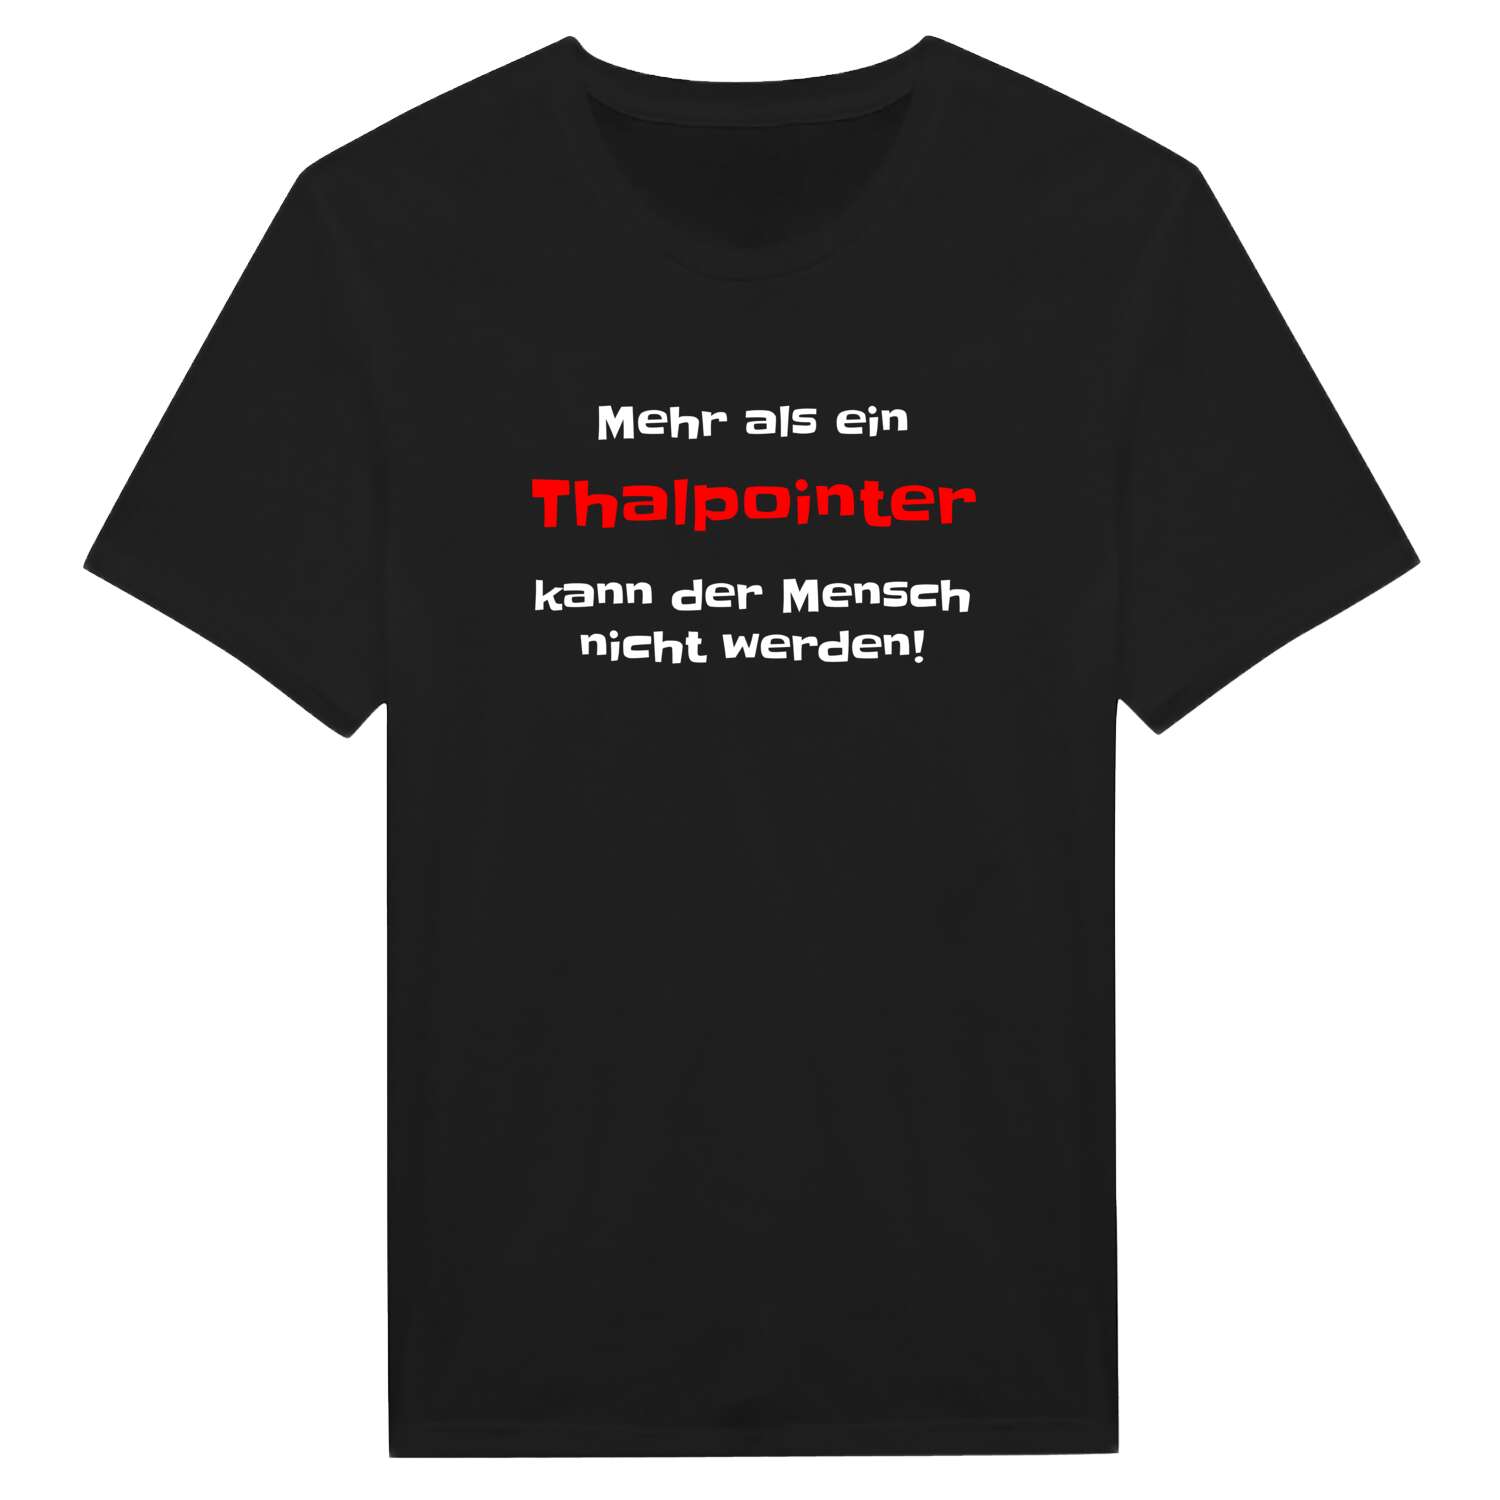 Thalpoint T-Shirt »Mehr als ein«